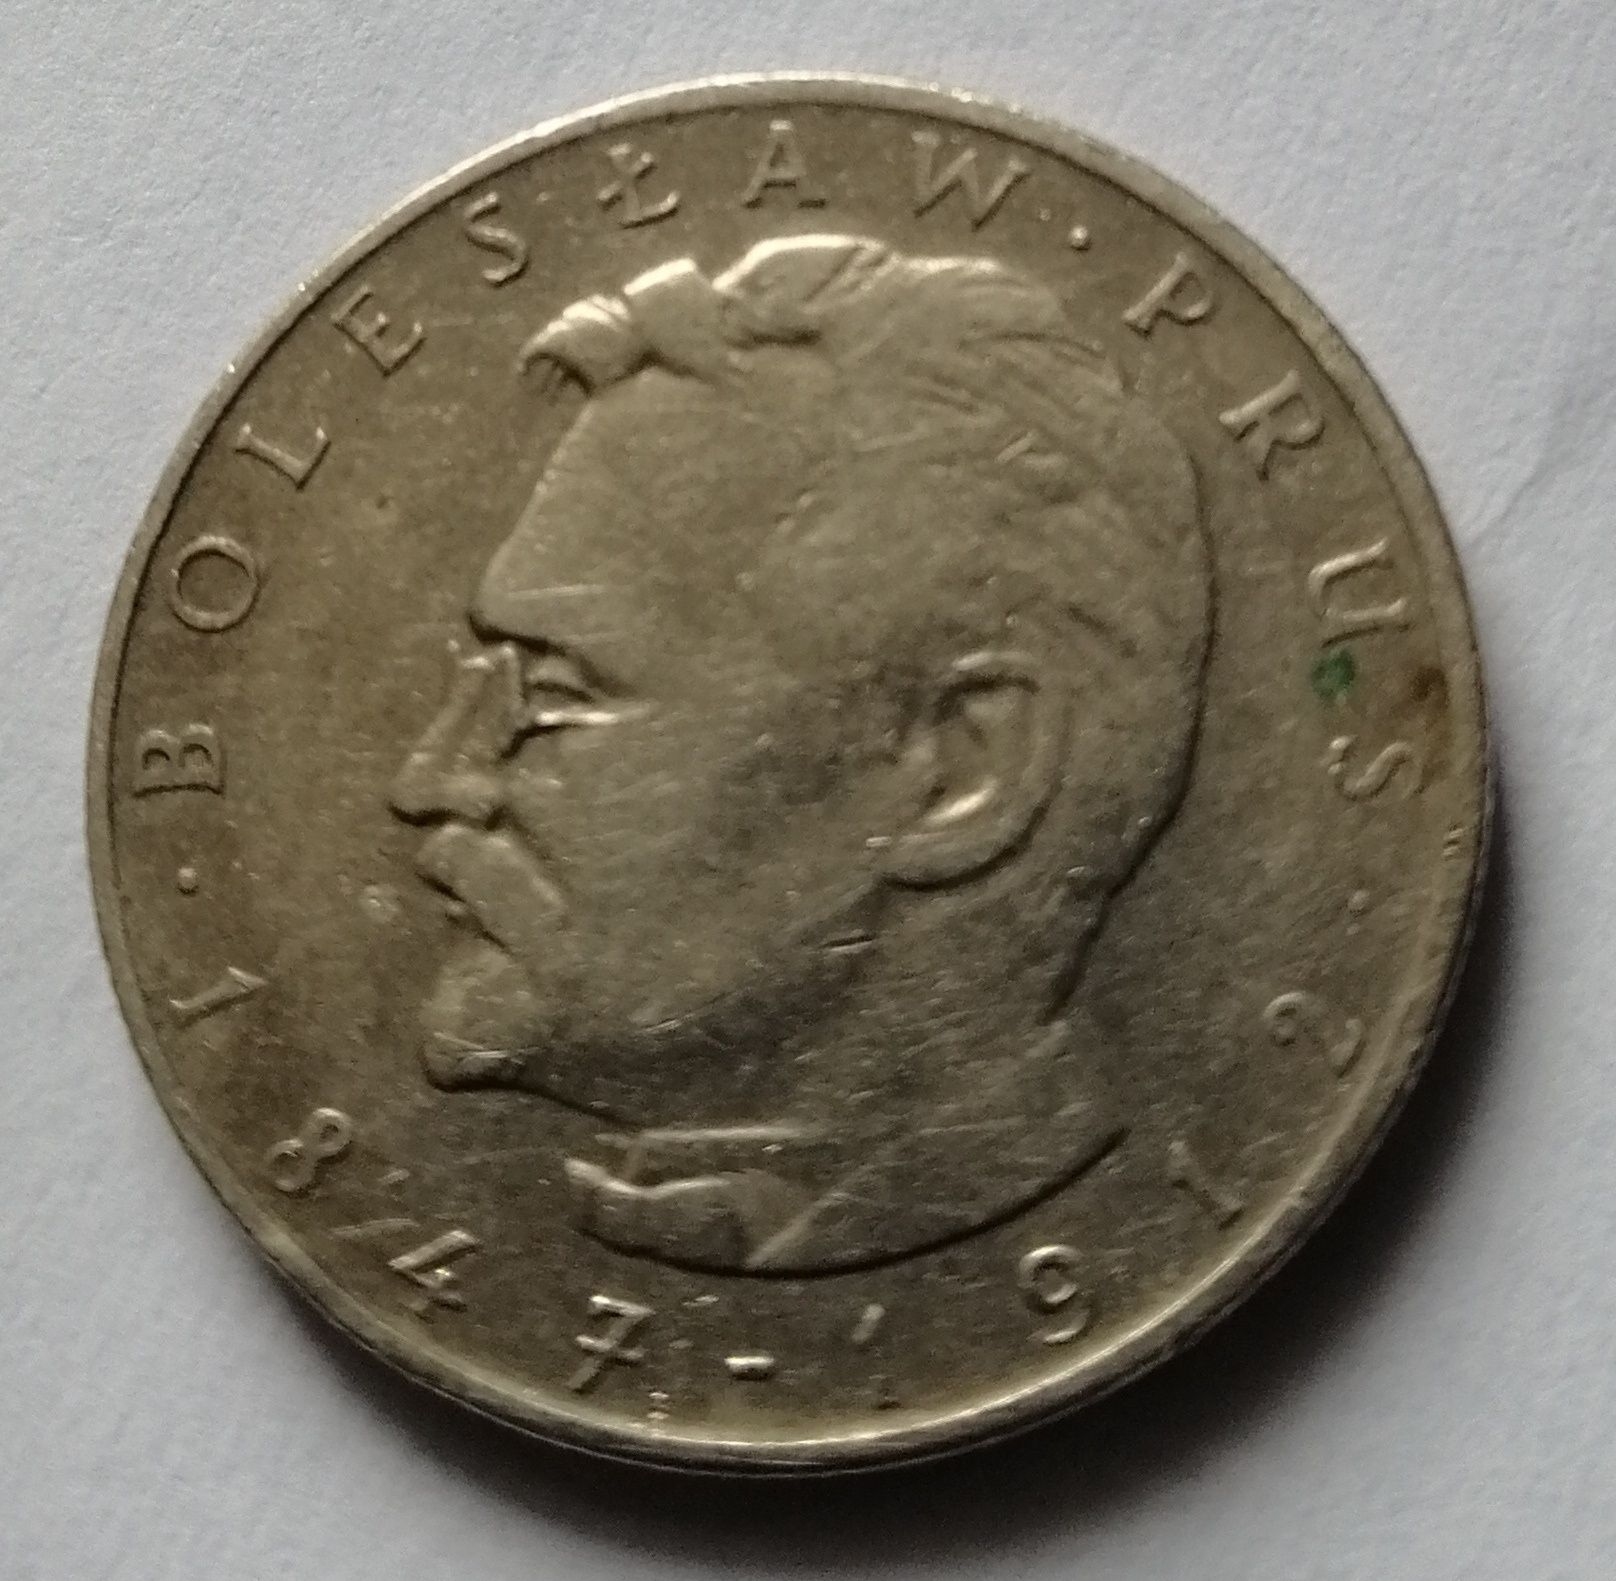 Moneta 10 zł Bolesław Prus 1975